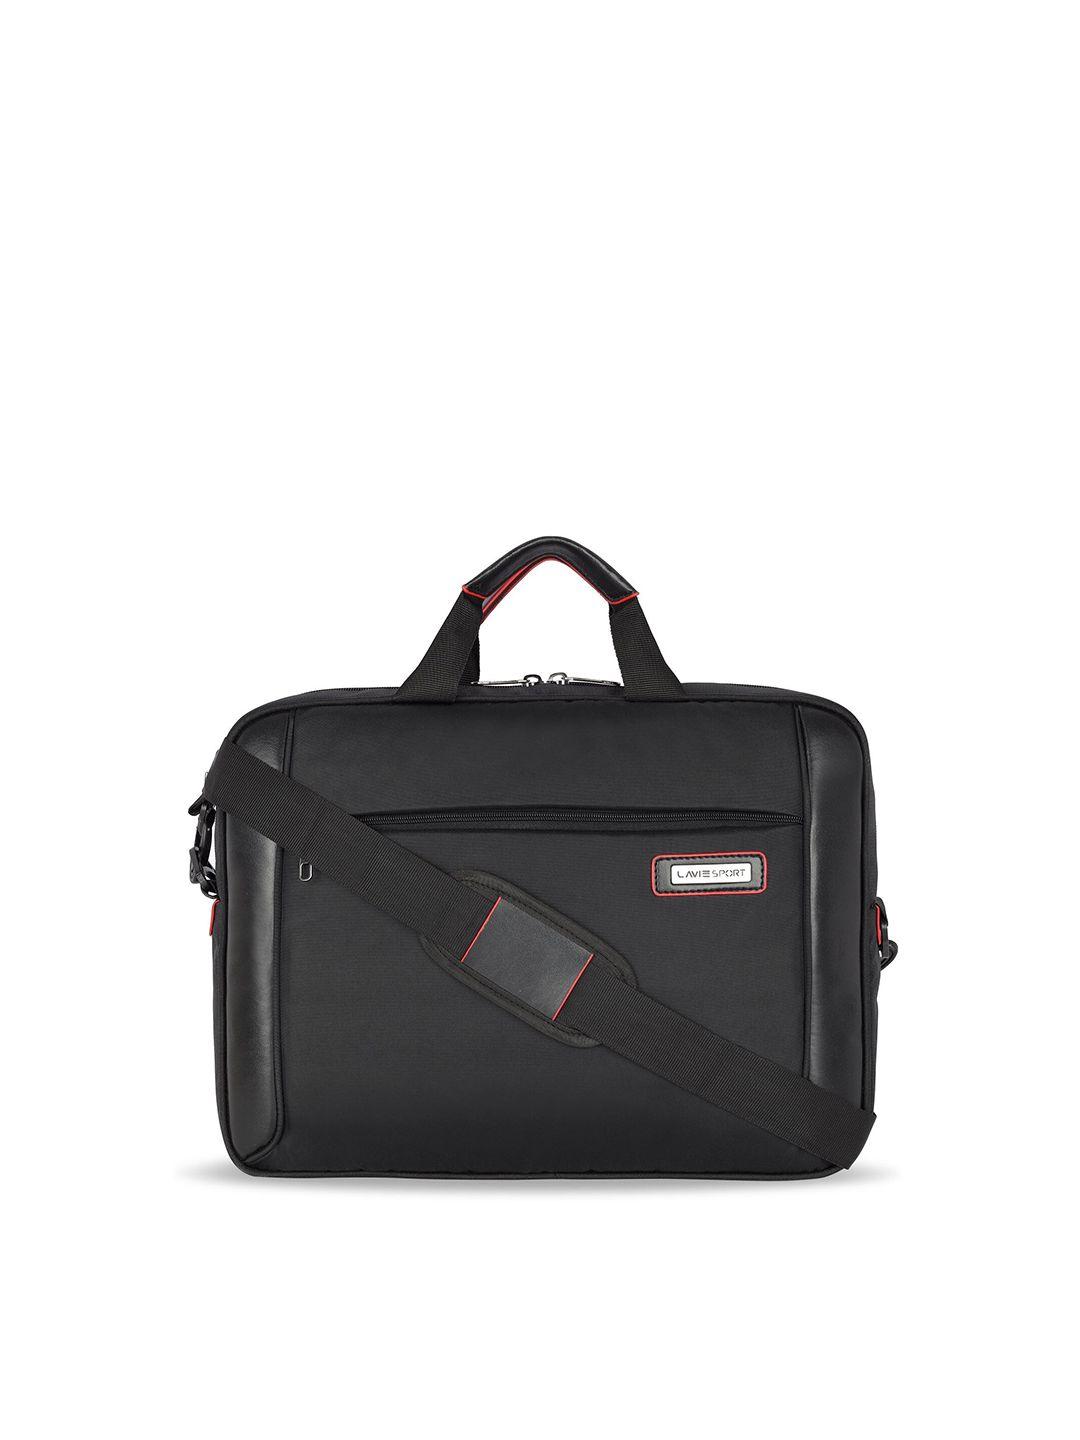 lavie-sport-laptop-briefcase-bag